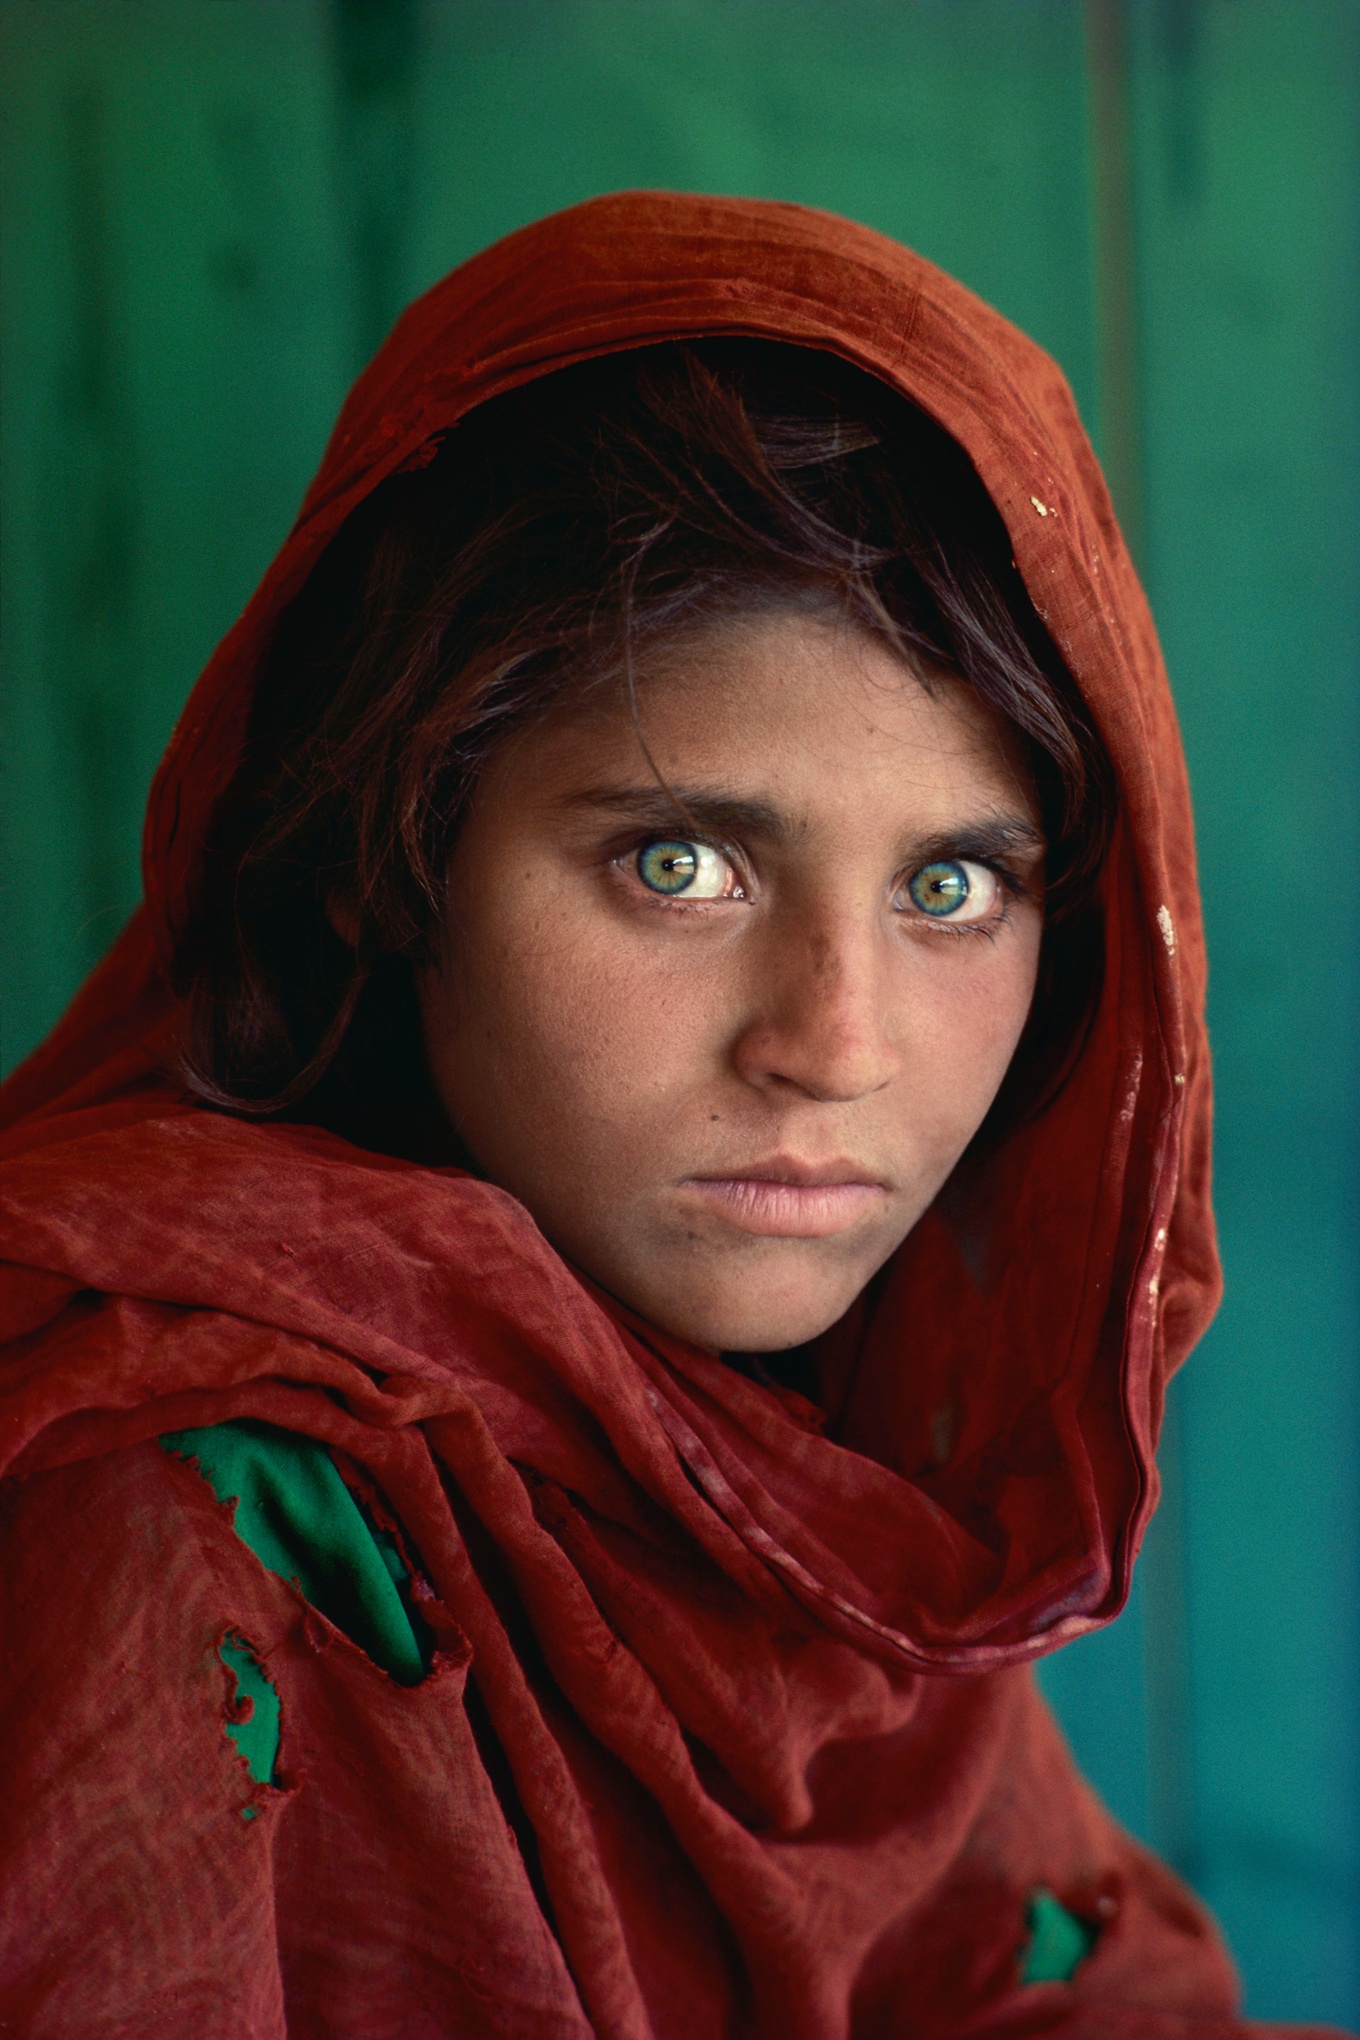 1984年攝影師史提夫‧麥凱瑞所拍攝的封面照片「阿富汗女孩」，成為因戰爭被迫流離失所至巴基斯坦難民營的阿富汗人標誌。